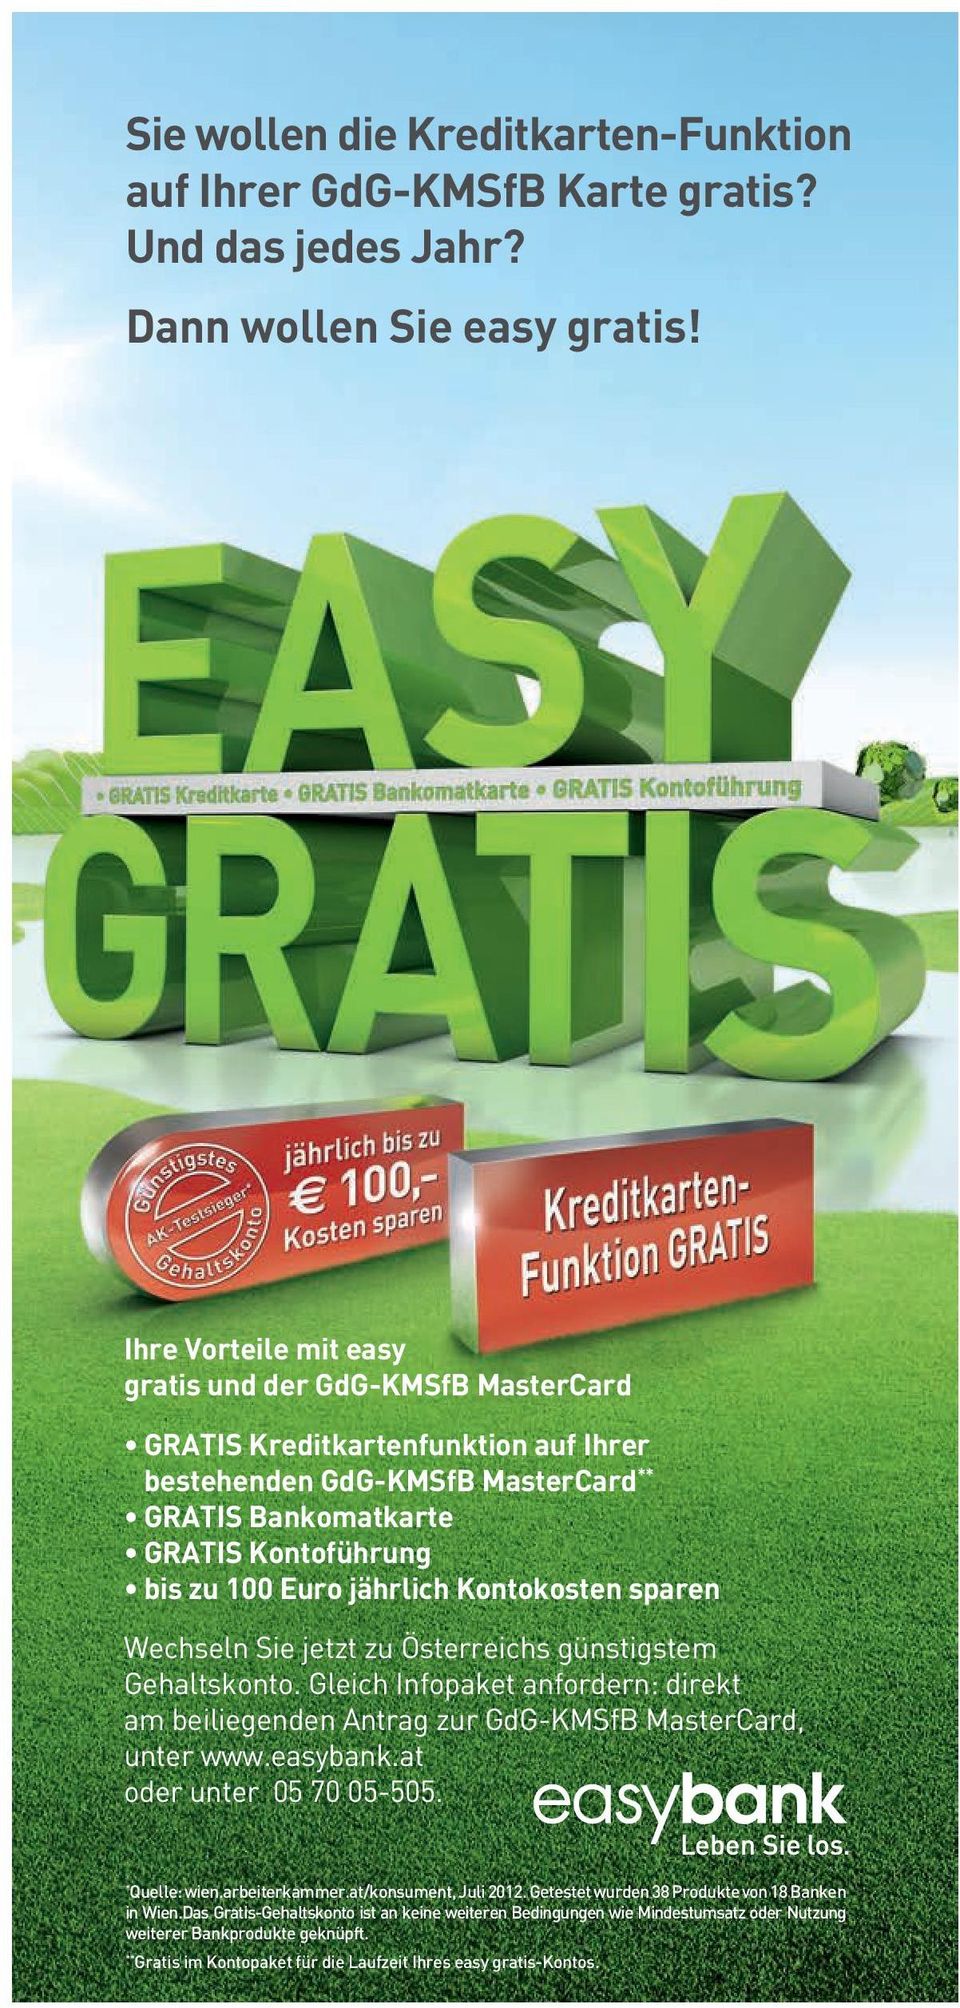 Kontokosten sparen Wechseln Sie jetzt zu Österreichs günstigstem Gehaltskonto. Gleich Infopaket anfordern: direkt am beiliegenden Antrag zur GdG-KMSfB MasterCard, unter www.easybank.